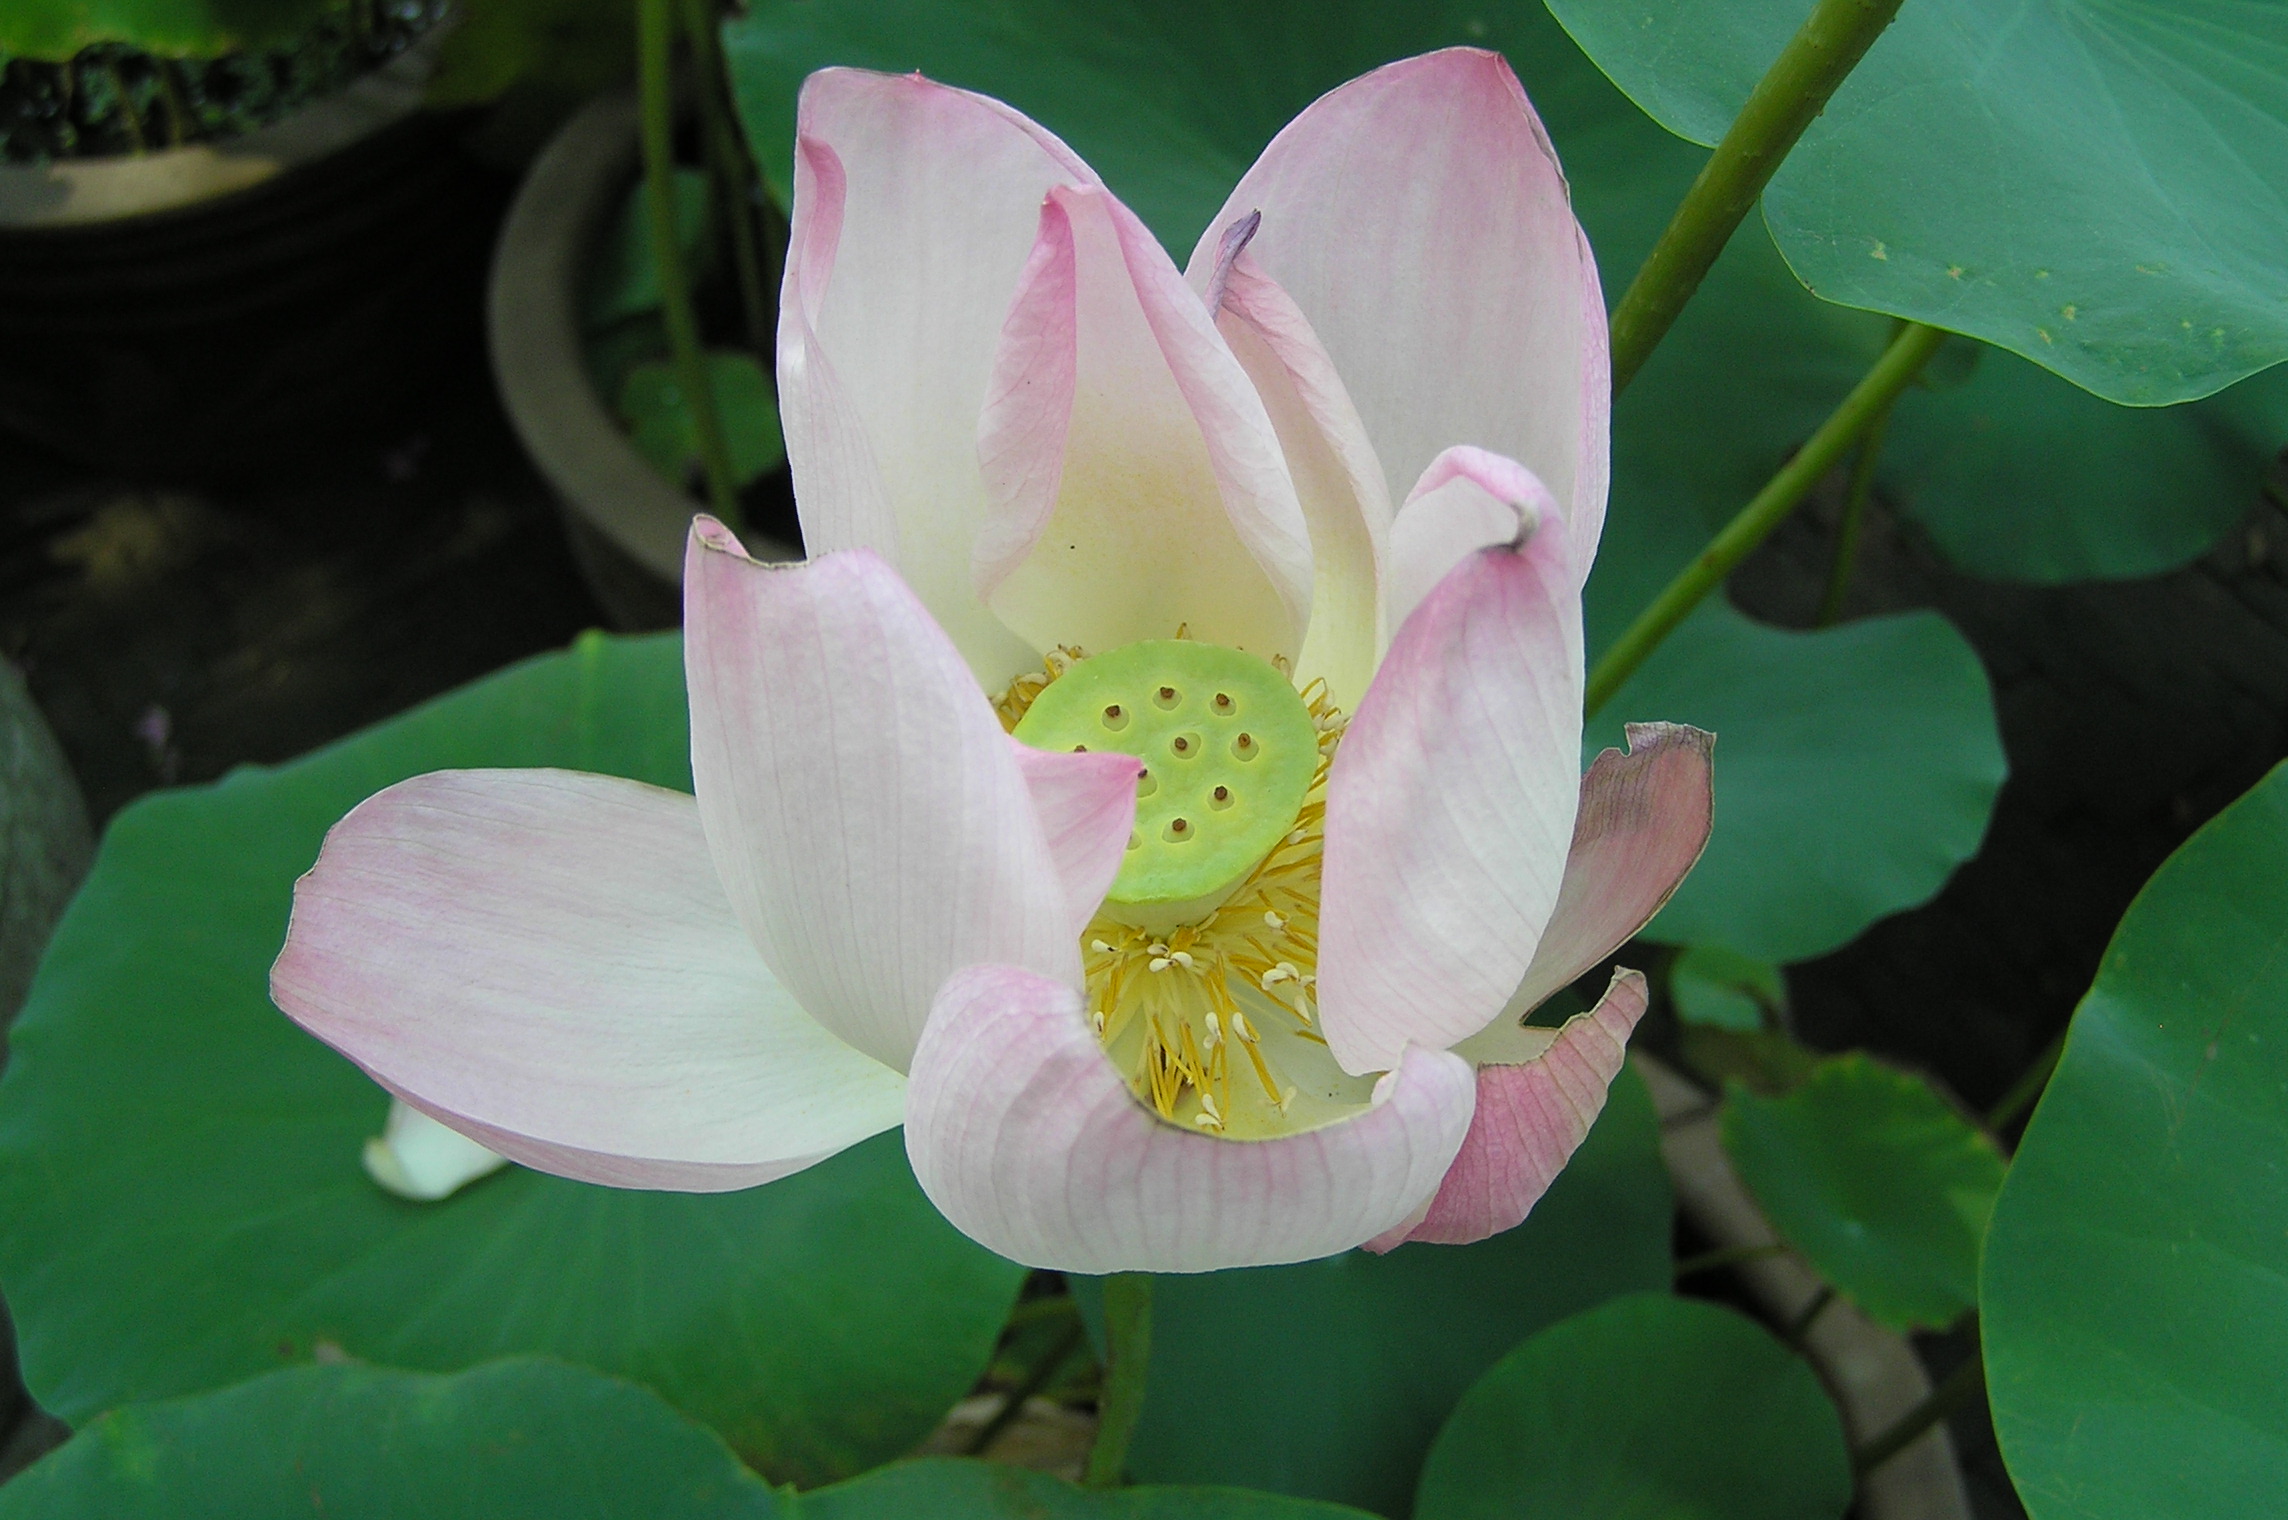 Lotus_flower_%28Suzhou%2C_China%29.jpg